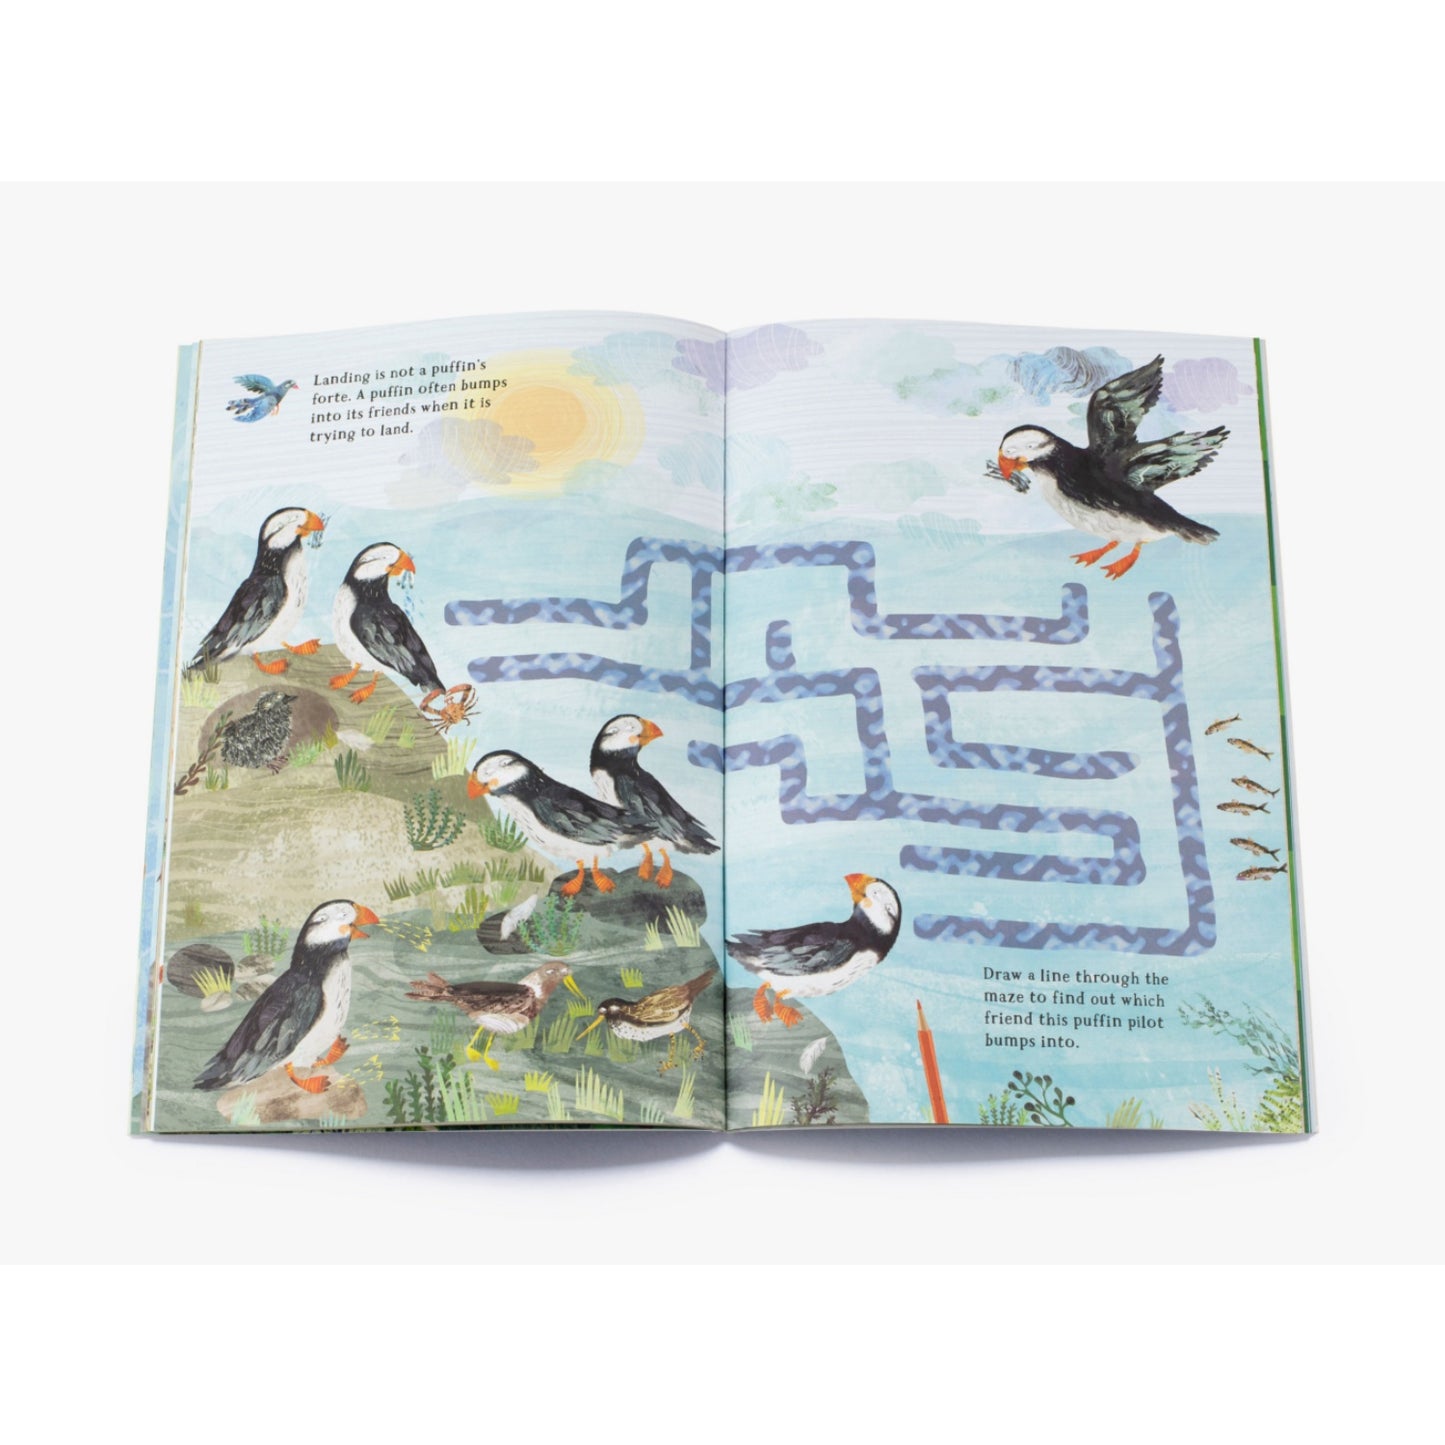 The Big Sticker Book of Birds | Children's Activity Book on Birds